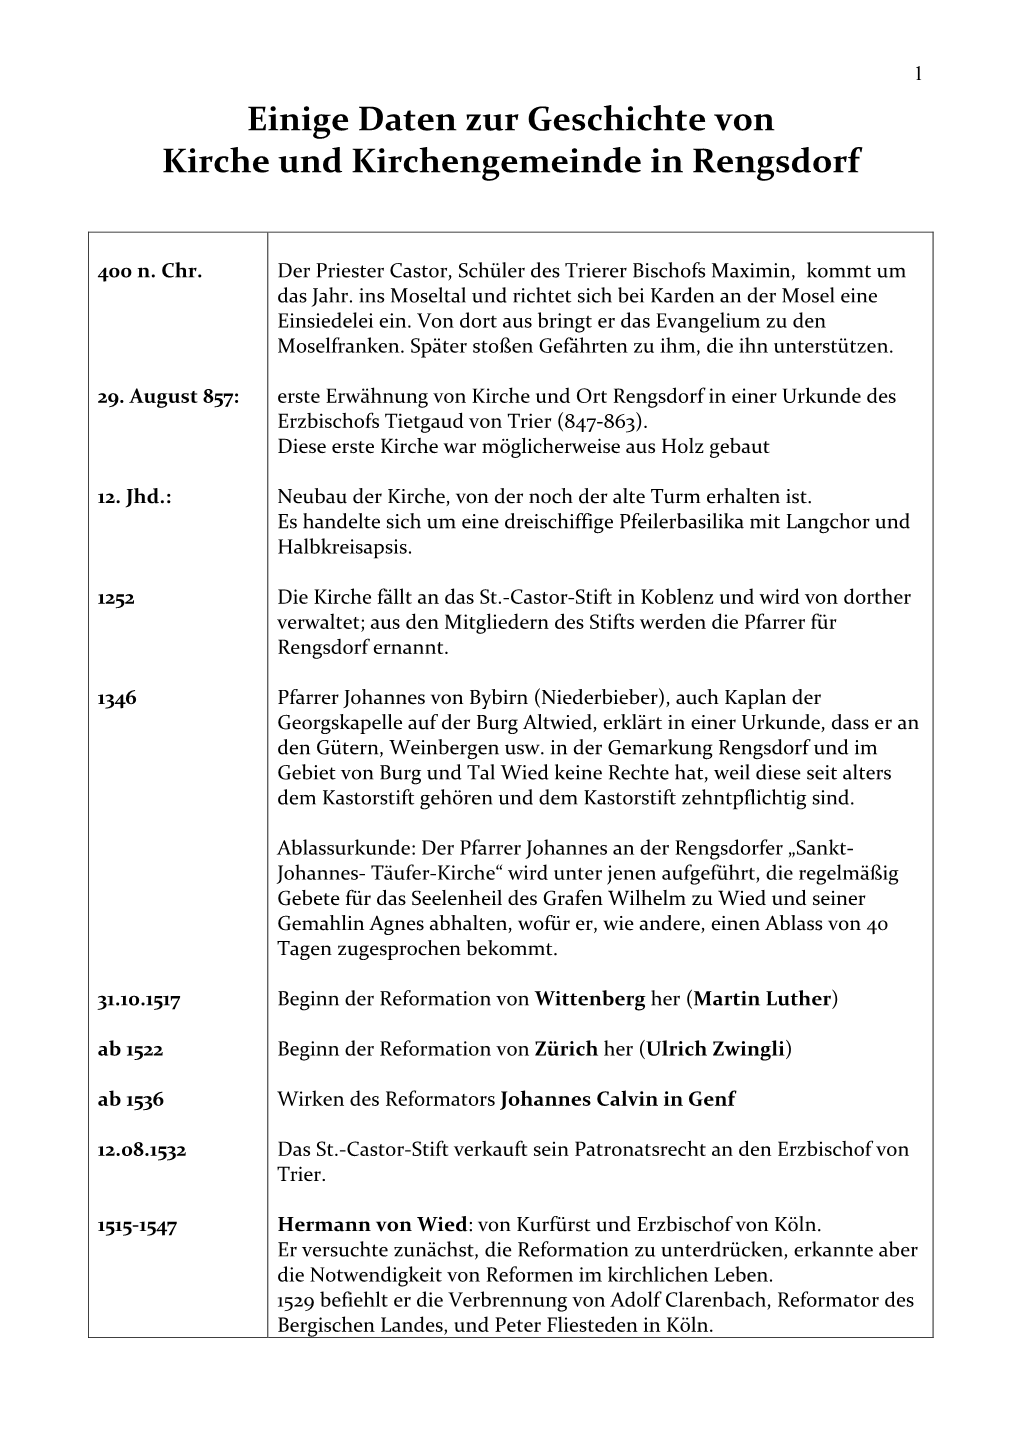 Einige Daten Zur Geschichte Von Kirche Und Kirchengemeinde in Rengsdorf